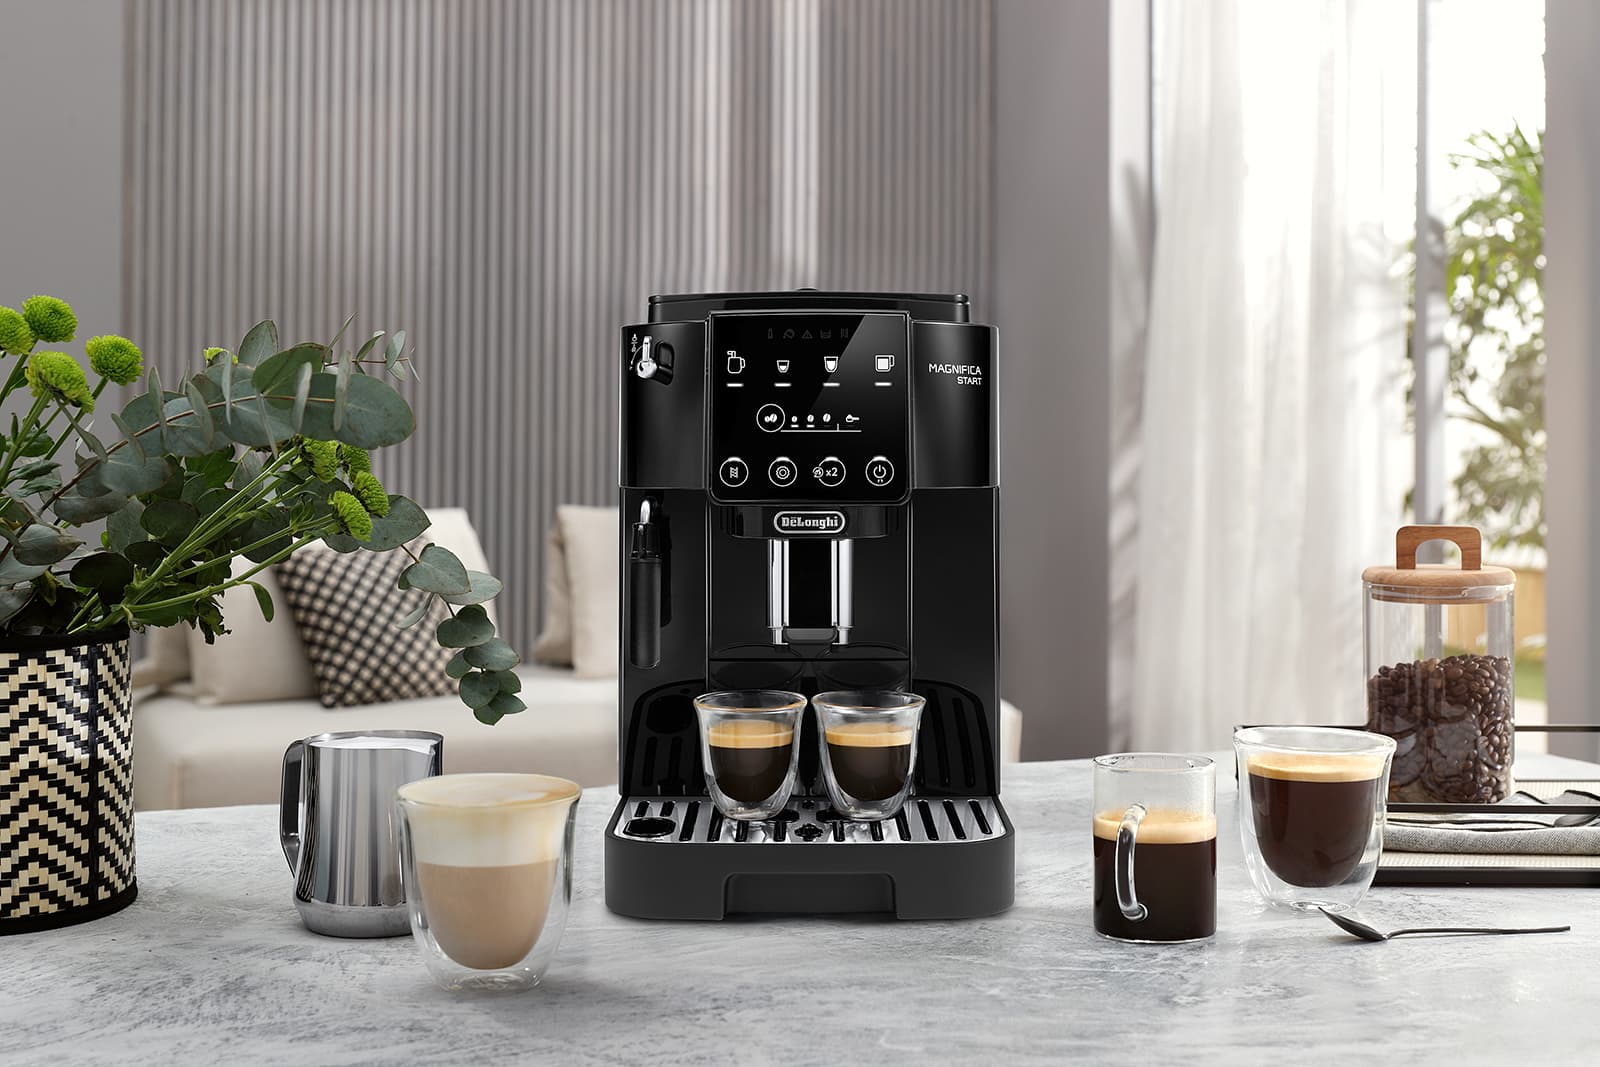 値引販売【美品】デロンギ ESAM03110B 全自動コーヒーマシン エスプレッソ式 コーヒーメーカー・エスプレッソマシン